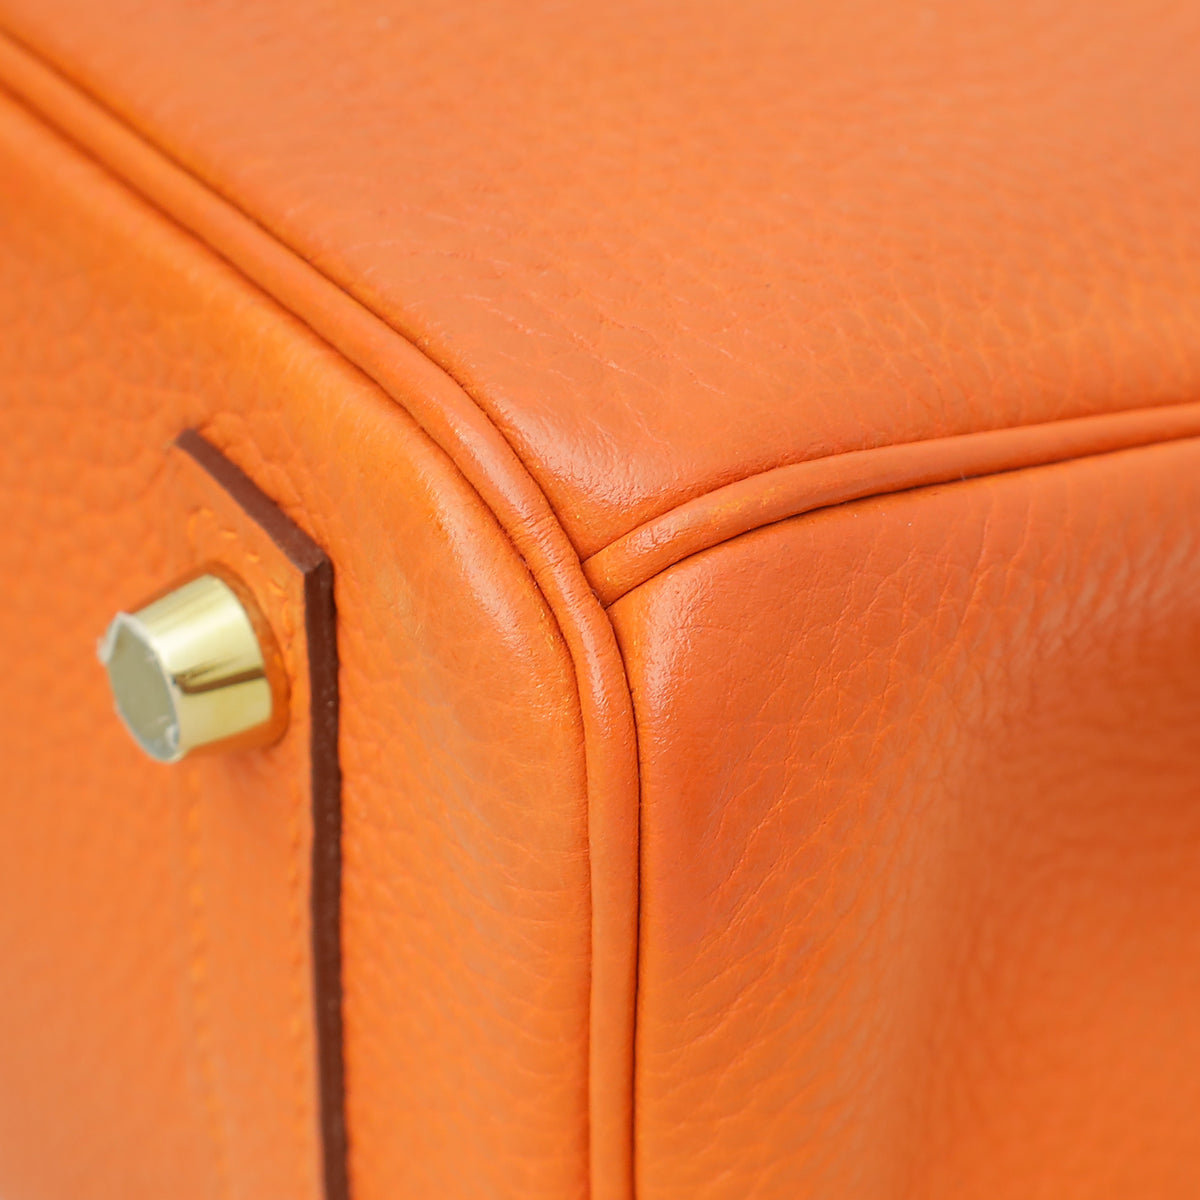 Hermes Orange Retourne Birkin 25 Bag